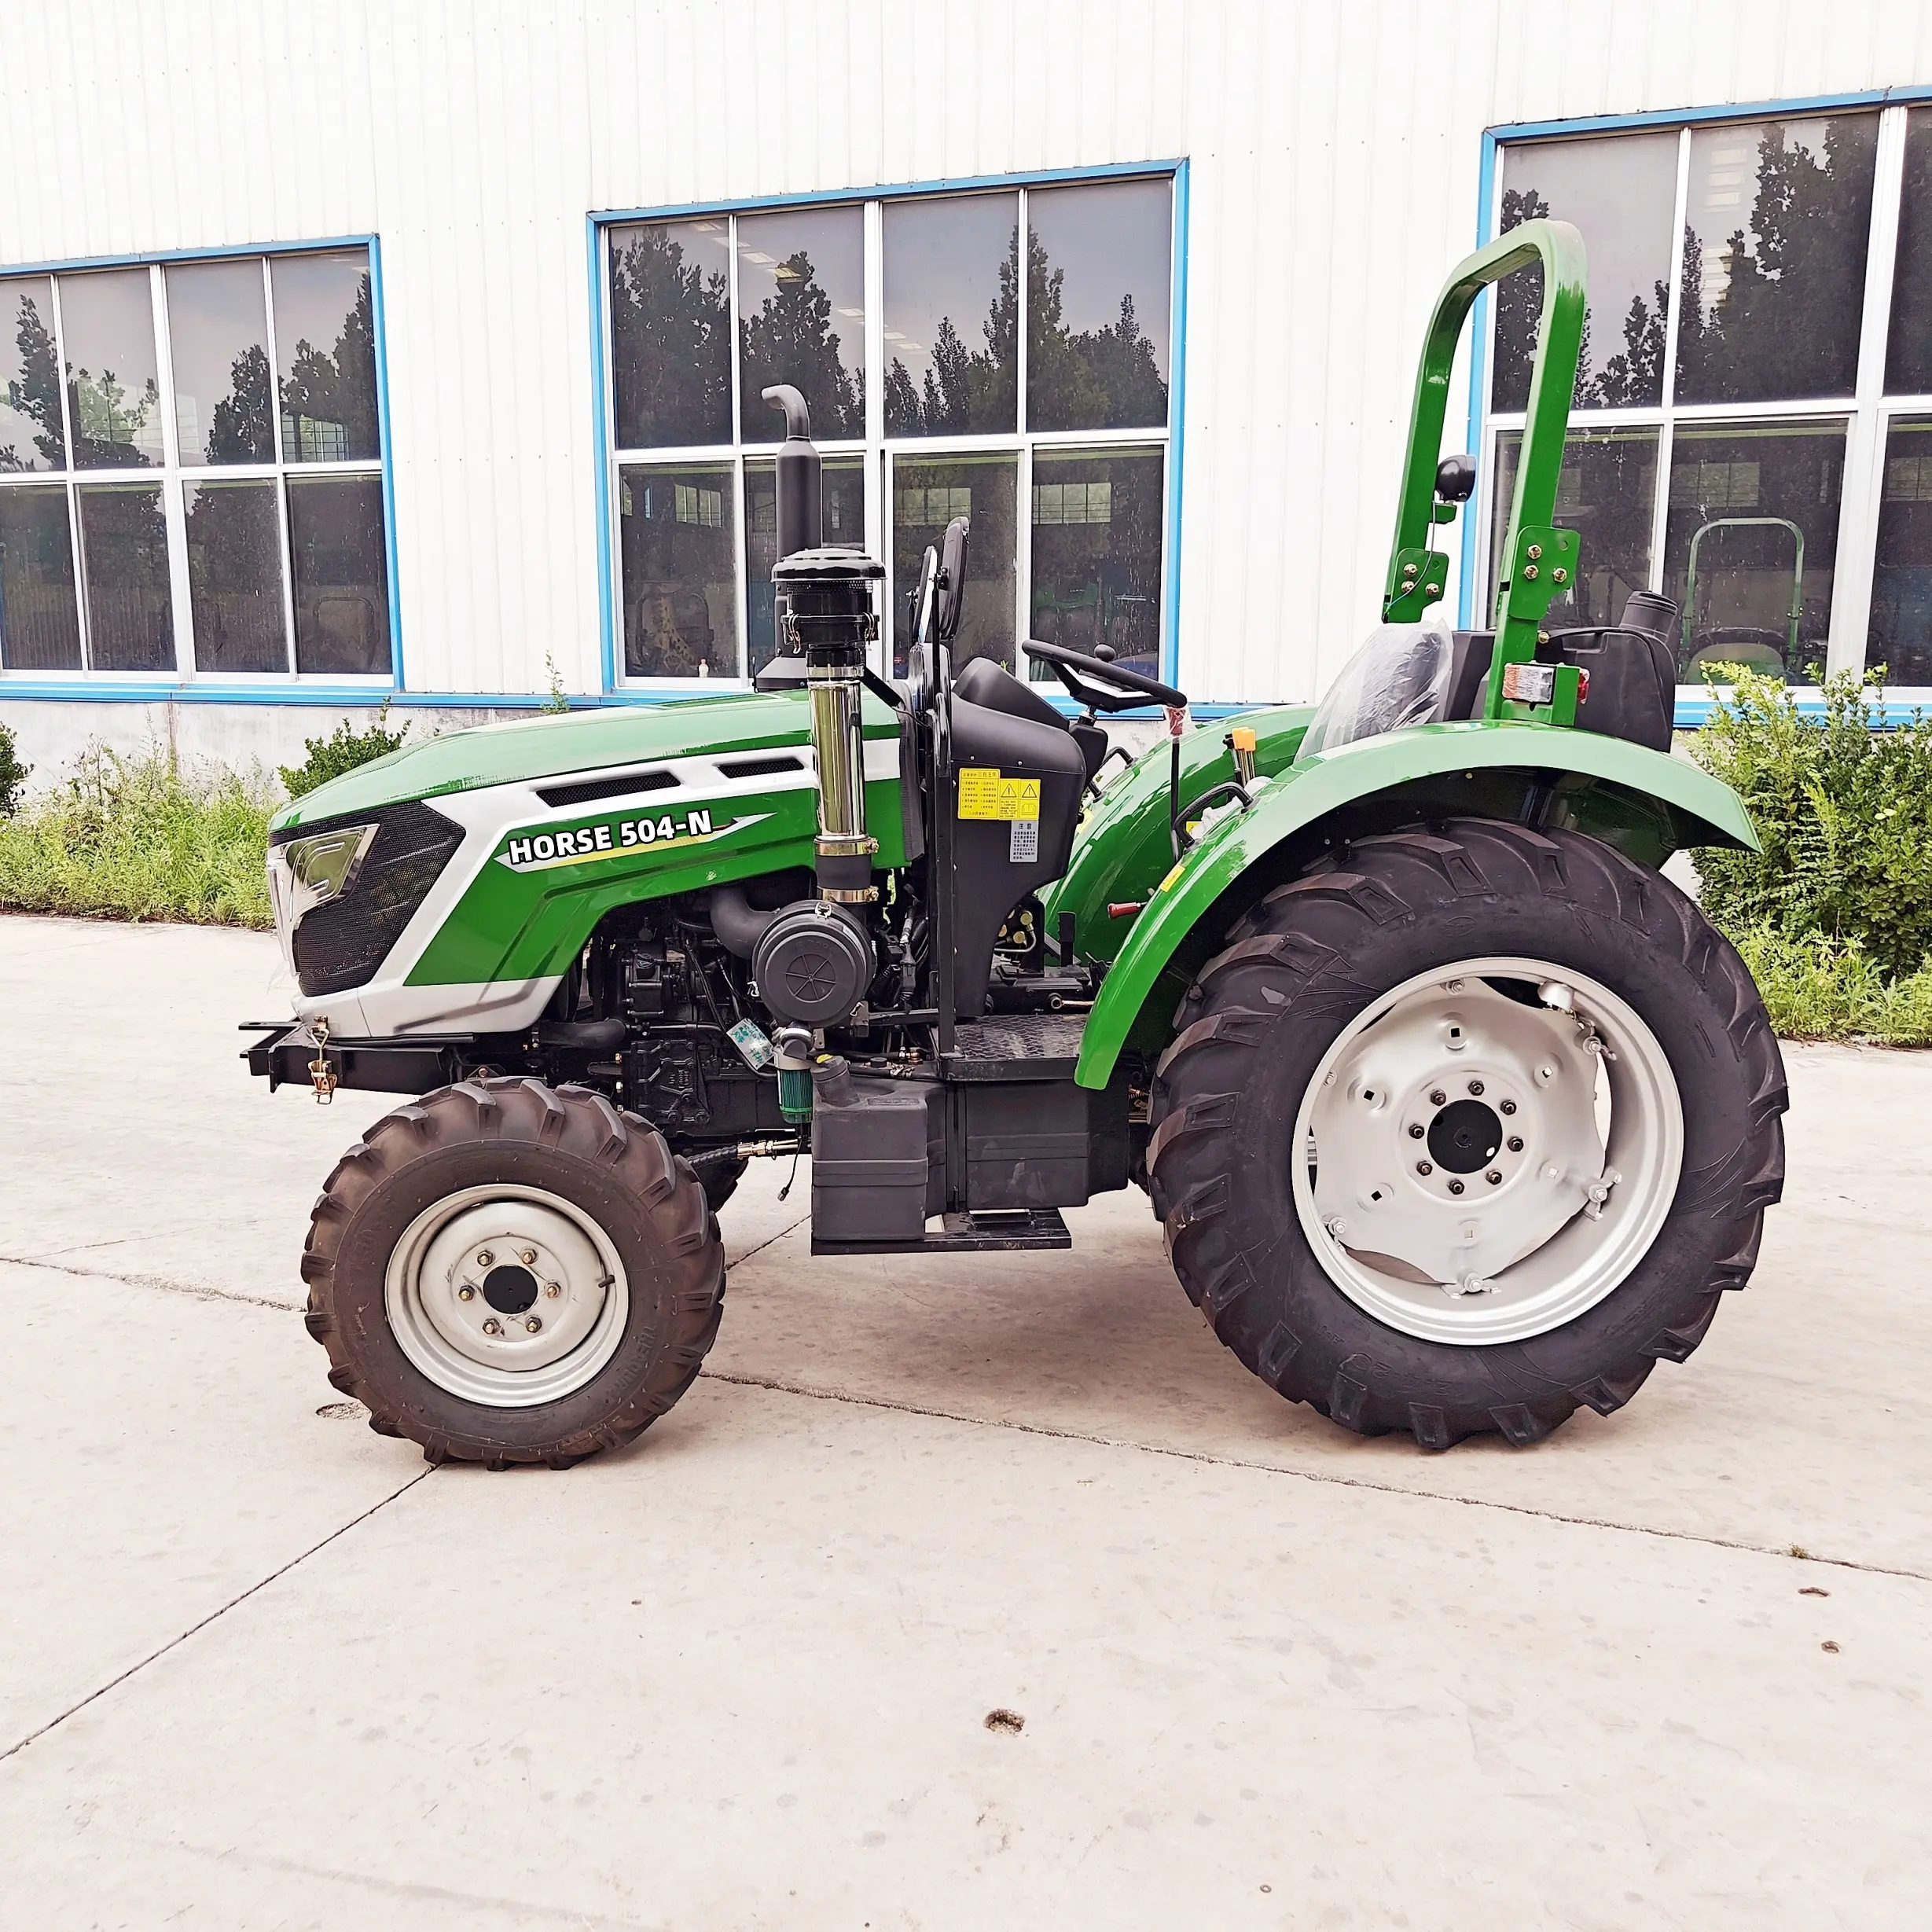 Tracteur 30hp mini traktor bajak salju kultivator multifungsi traktor mini pertanian 18 hp